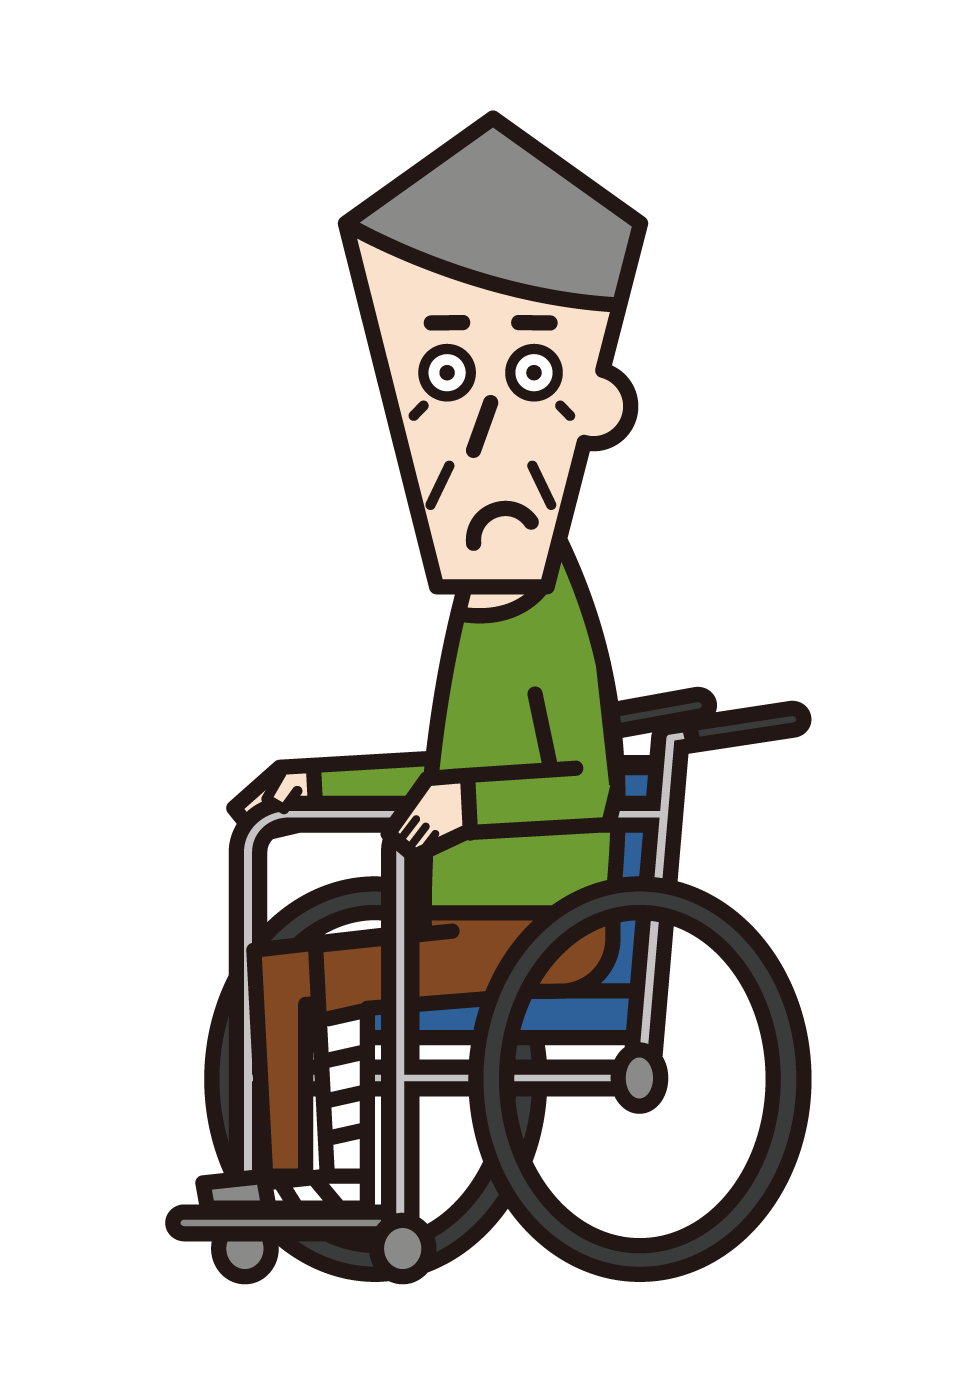 다리가 부러진 휠체어를 탄 사람(할아버지)의 그림